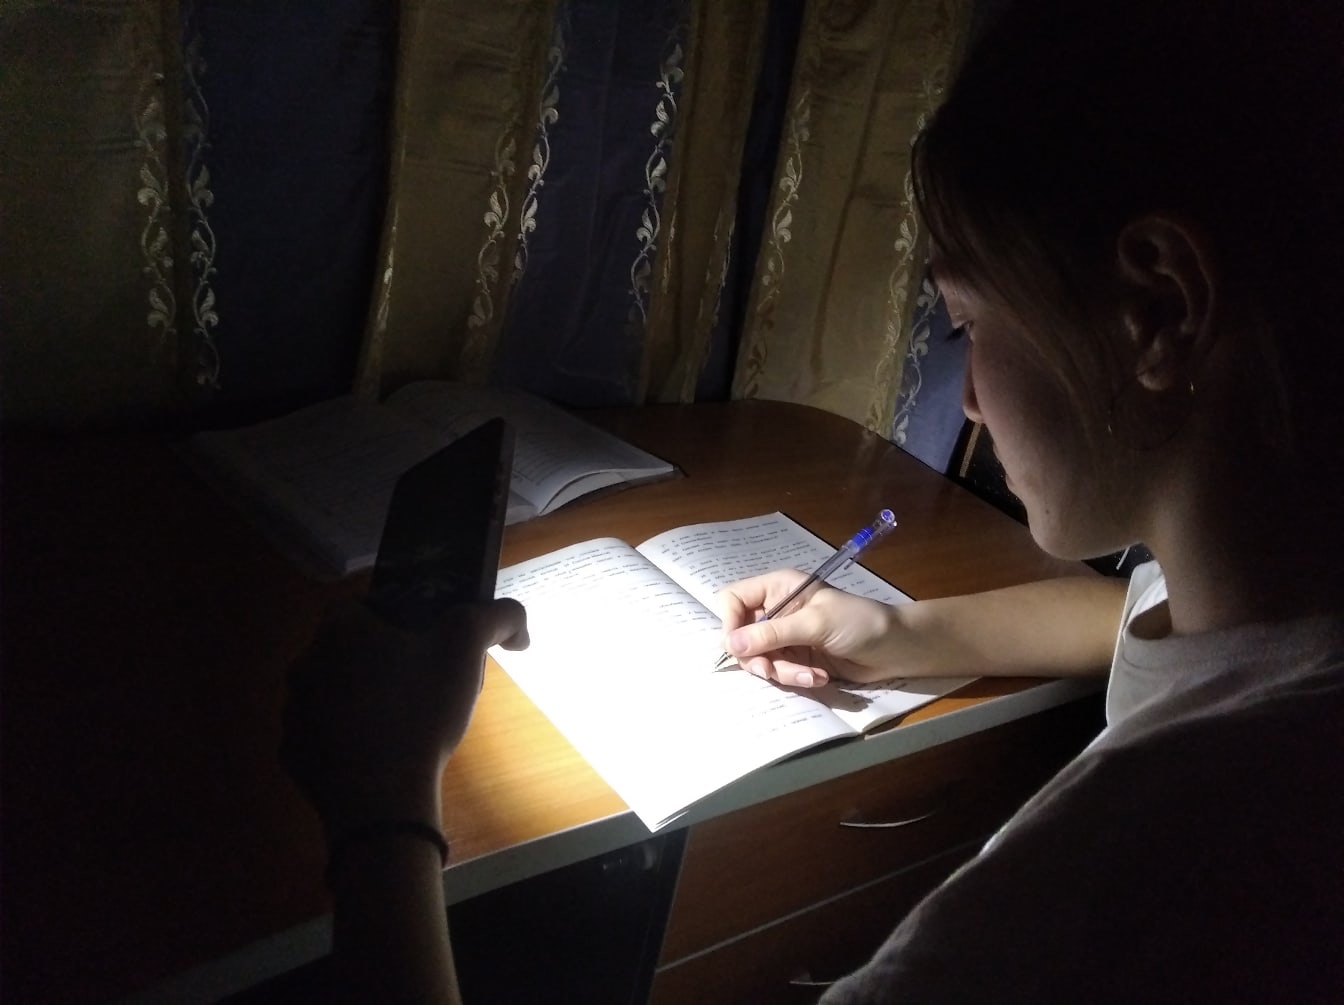 20 февраля в Кирово-Чепецке в десяти домах отключат электричество